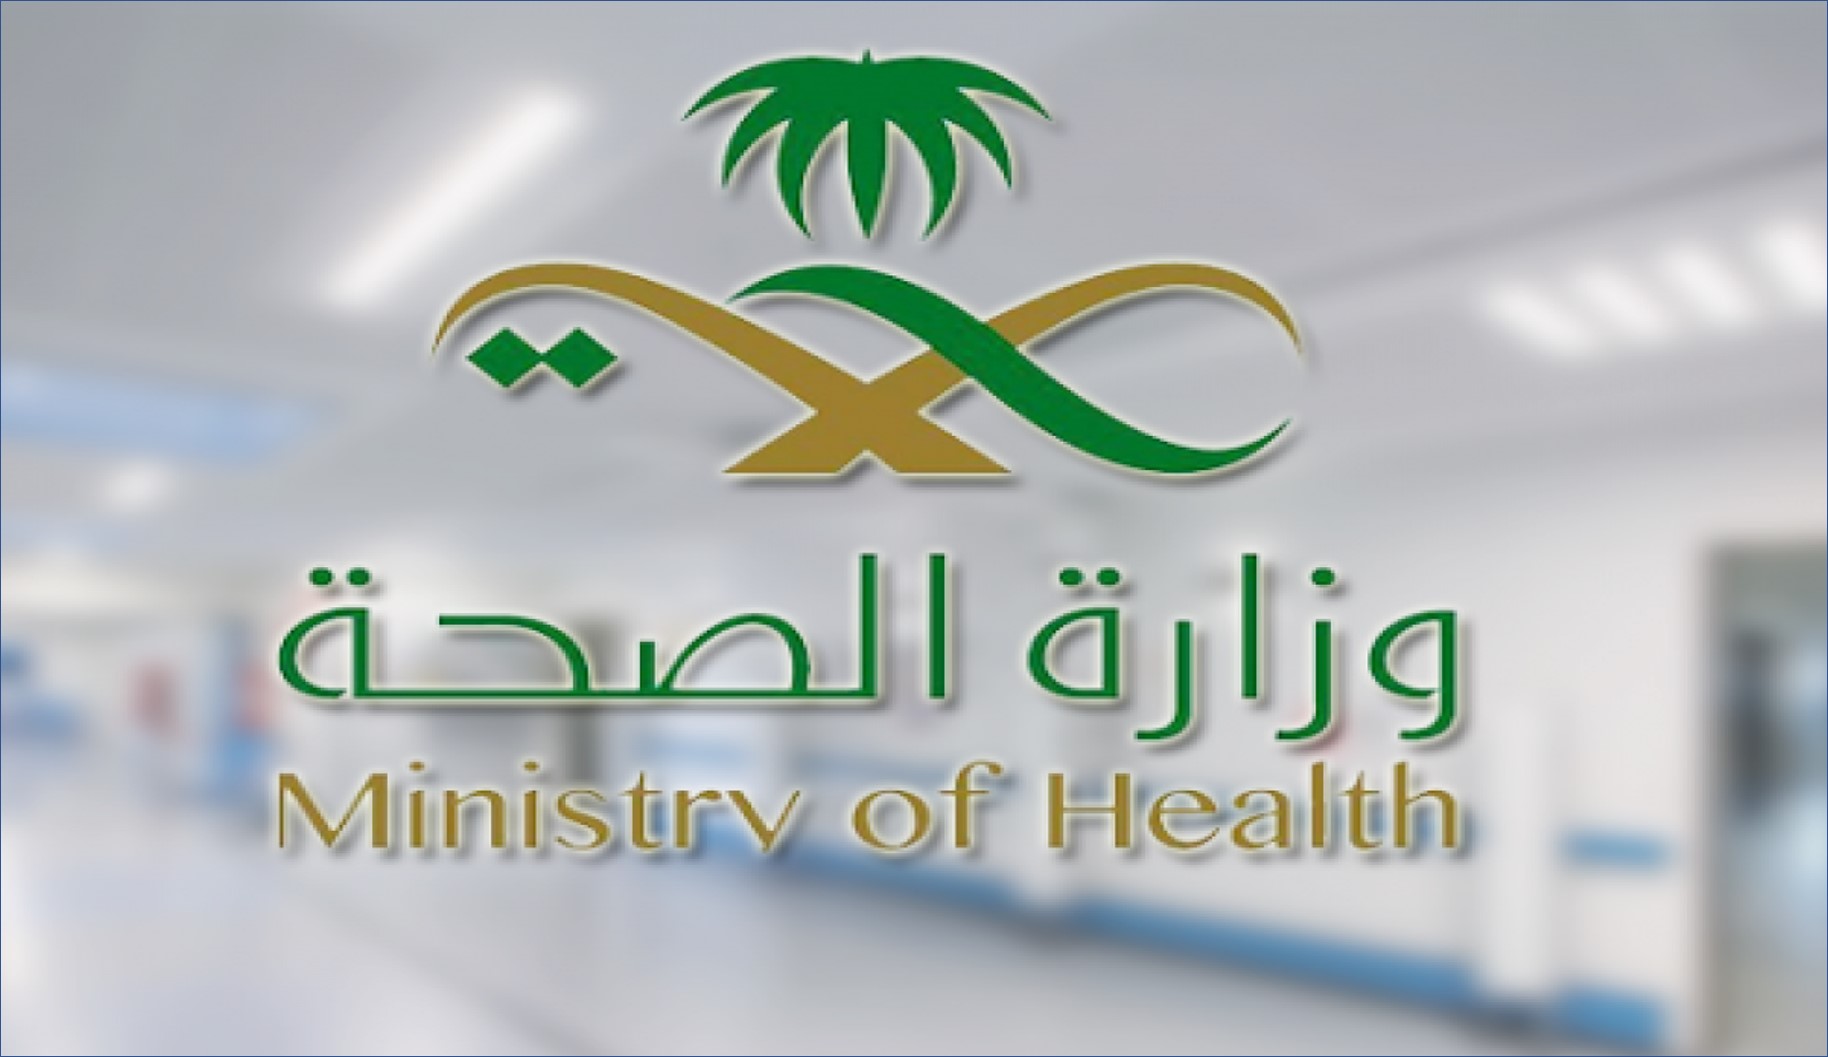 وزارة الصحة السعودية تعلن عن وظائف لموسم حج عام 1444 هـ